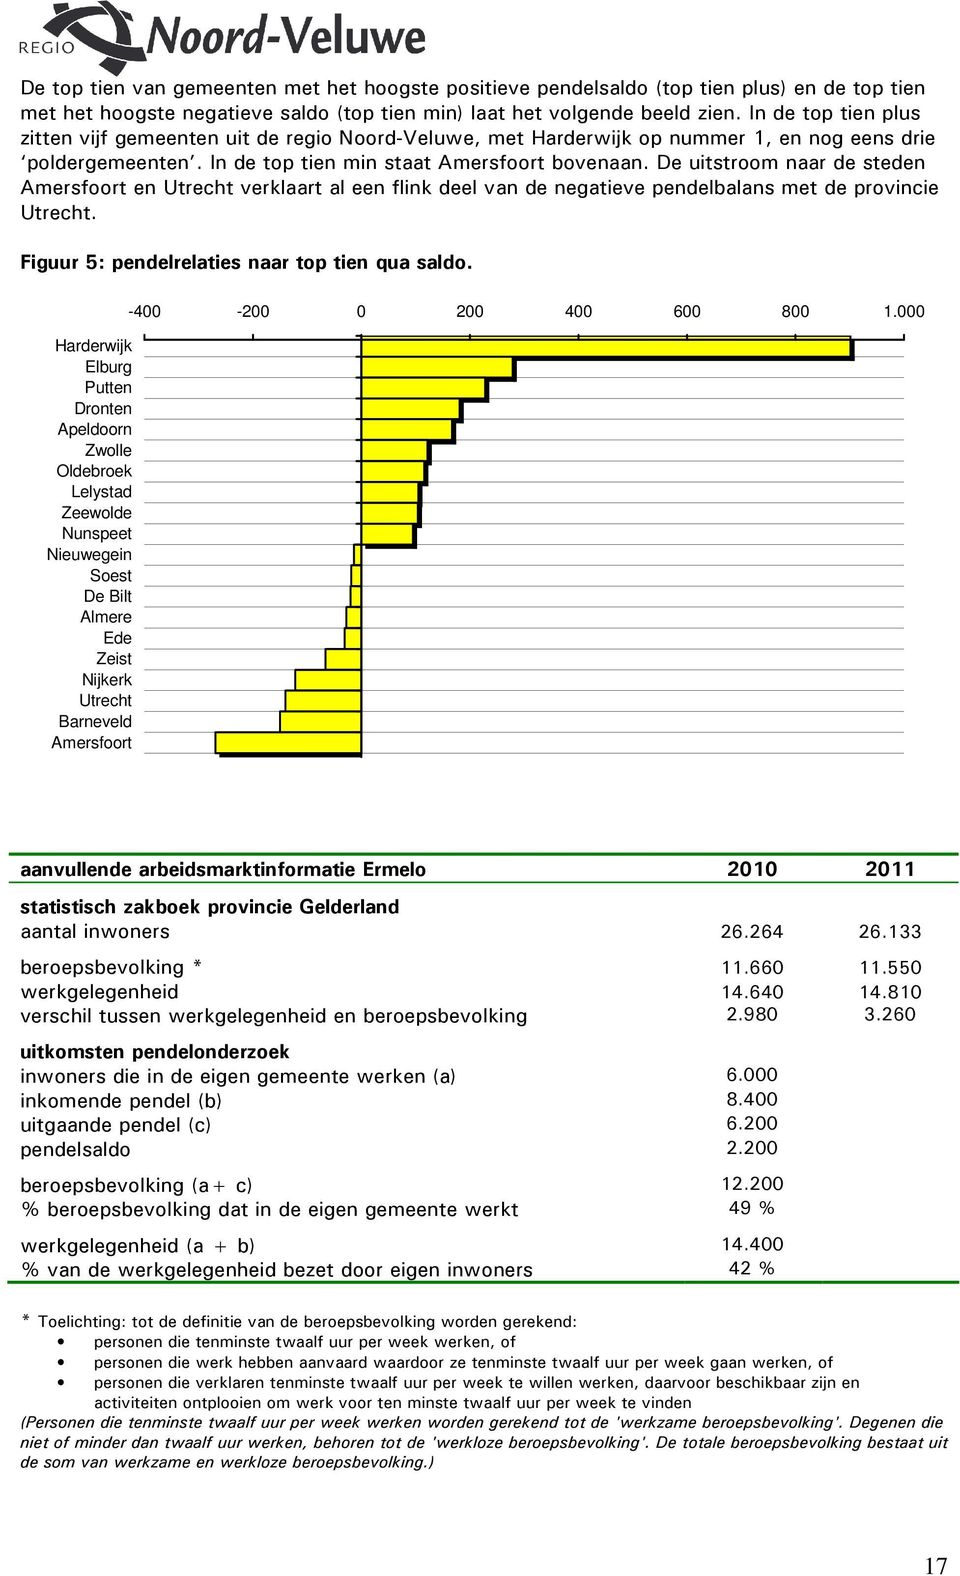 De uitstroom naar de steden Amersfoort en Utrecht verklaart al een flink deel van de negatieve pendelbalans met de provincie Utrecht. Figuur 5: pendelrelaties naar top tien qua saldo.